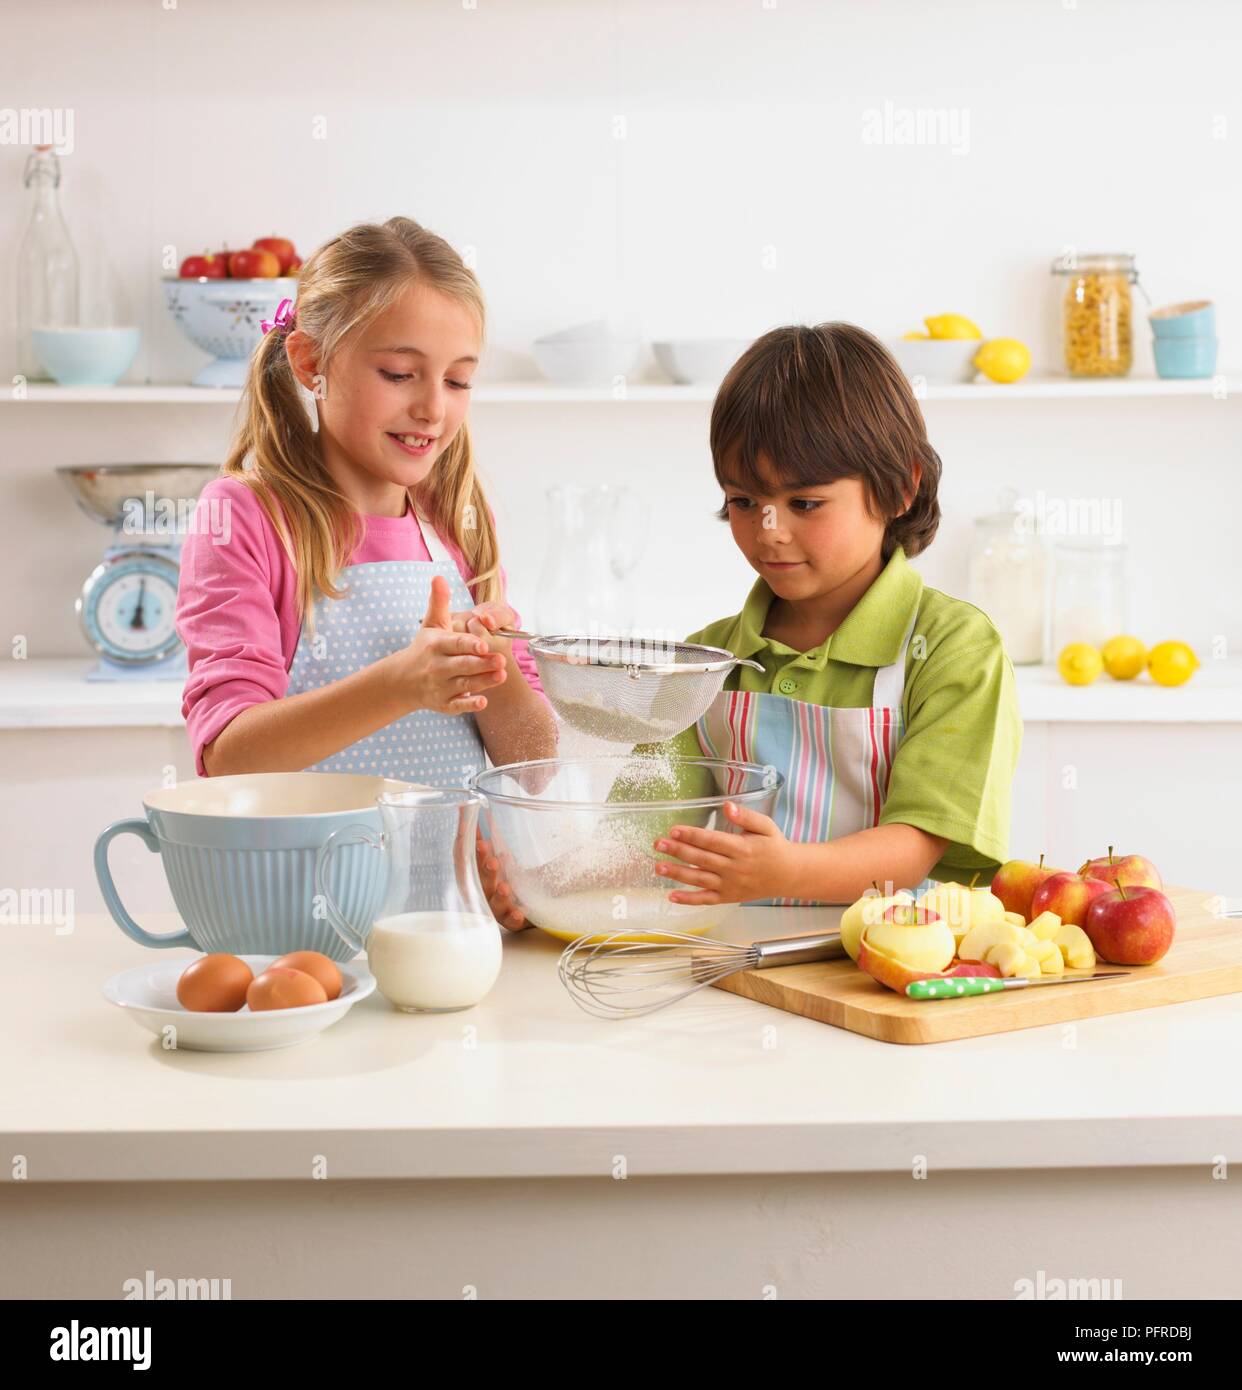 Mehl in Schüssel sieben Mädchen, junge Holding Schüssel, Eier, geschält und in Scheiben geschnittenen Äpfel, Schneebesen, und einen Krug Milch in der Nähe auf der Küchenarbeitsplatte Stockfoto